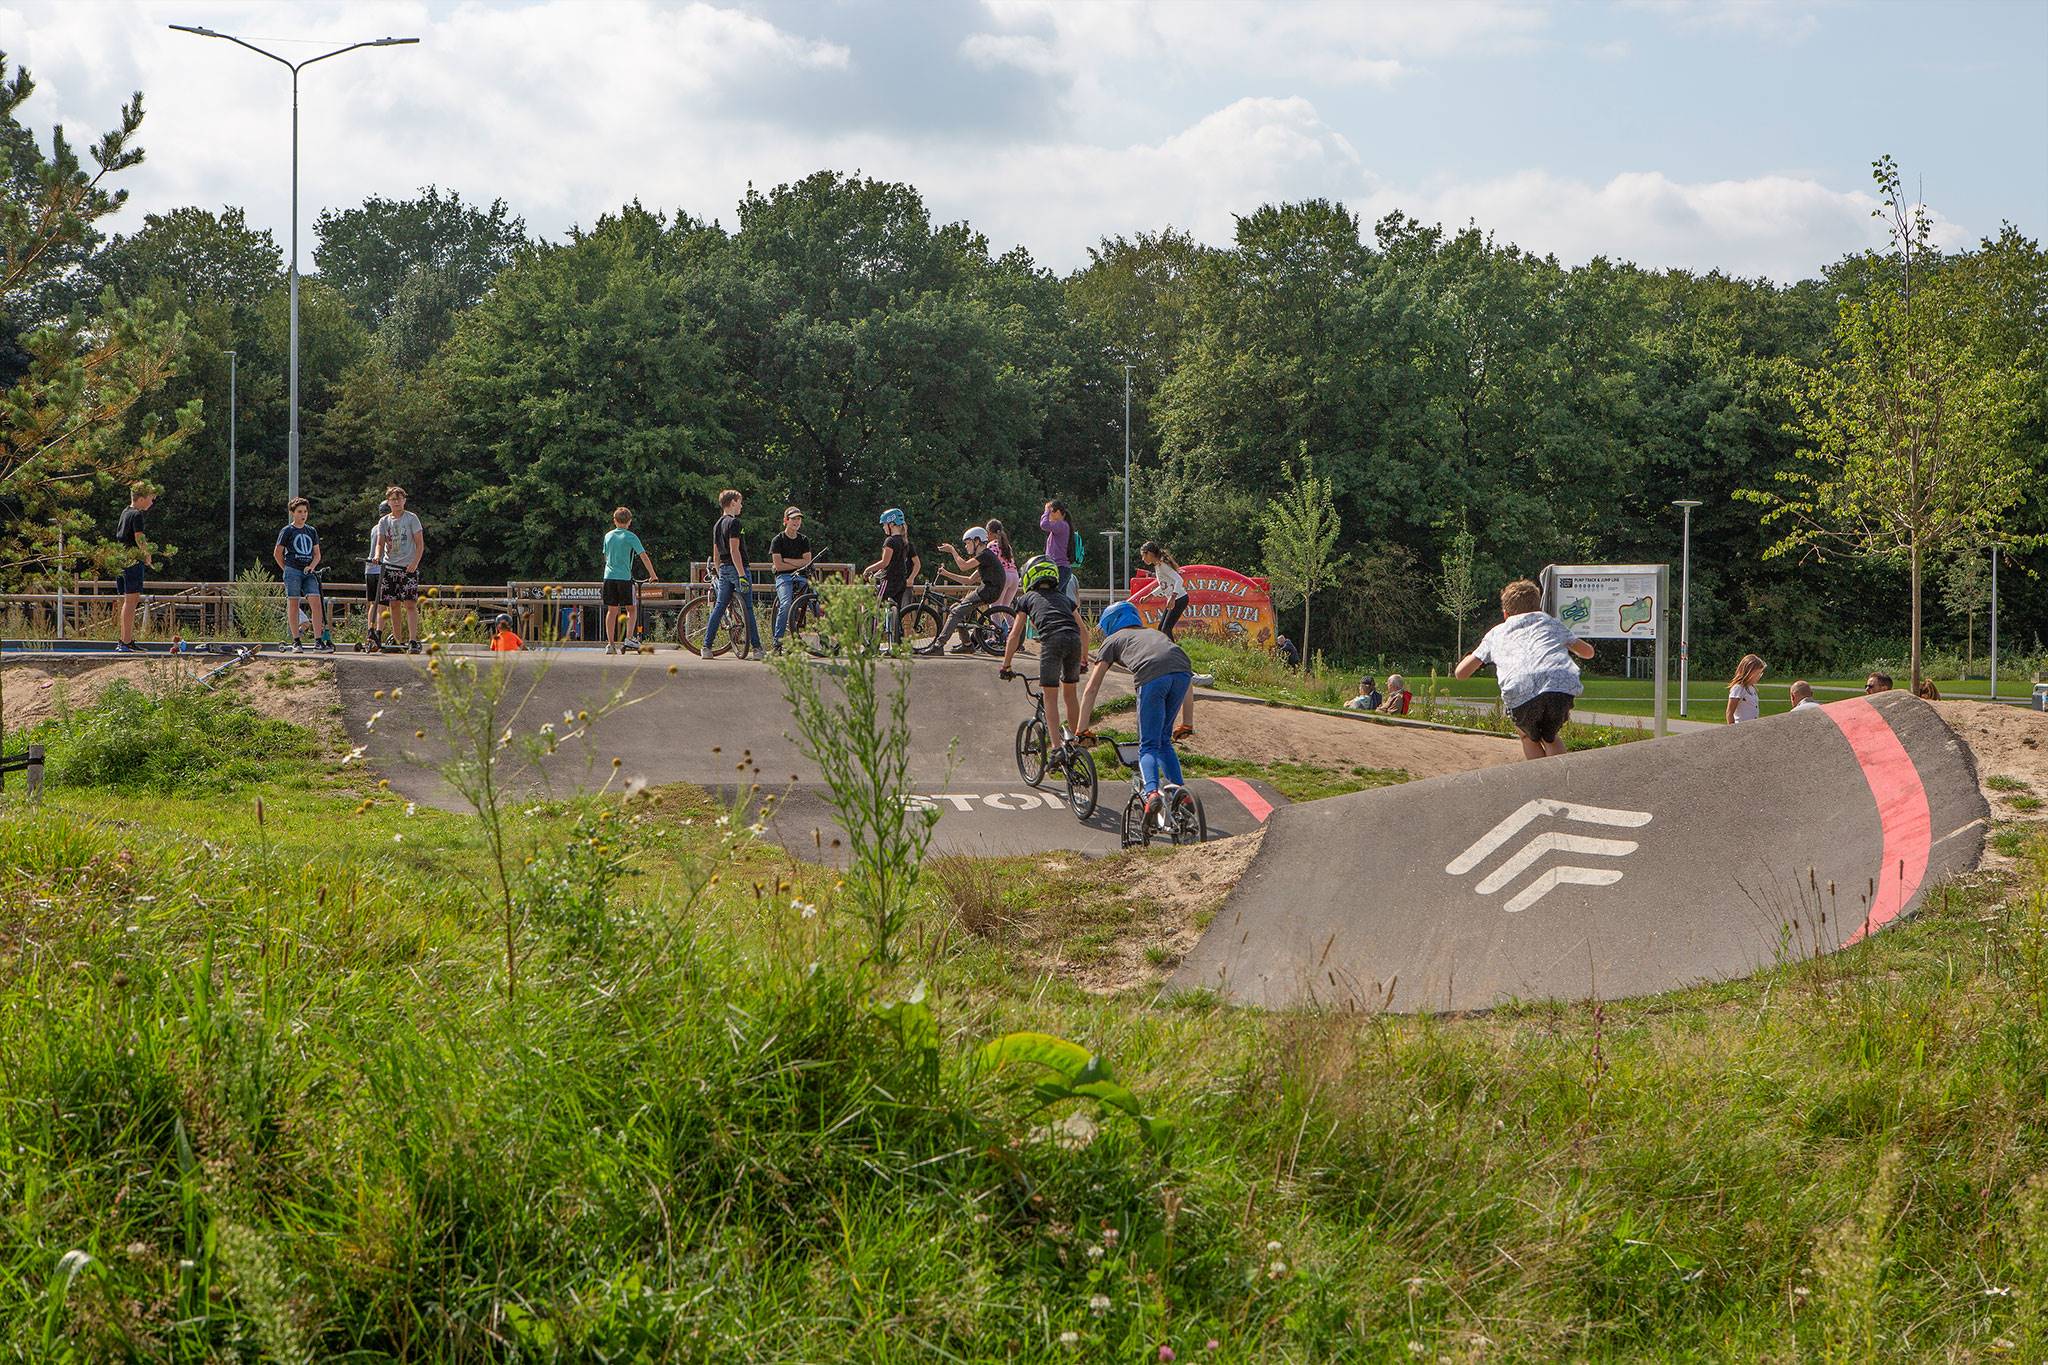 Urban Sportpark, Eindhoven - Wij onderhouden dit terrein terwijl we rekening houden met de veiligheid van het park